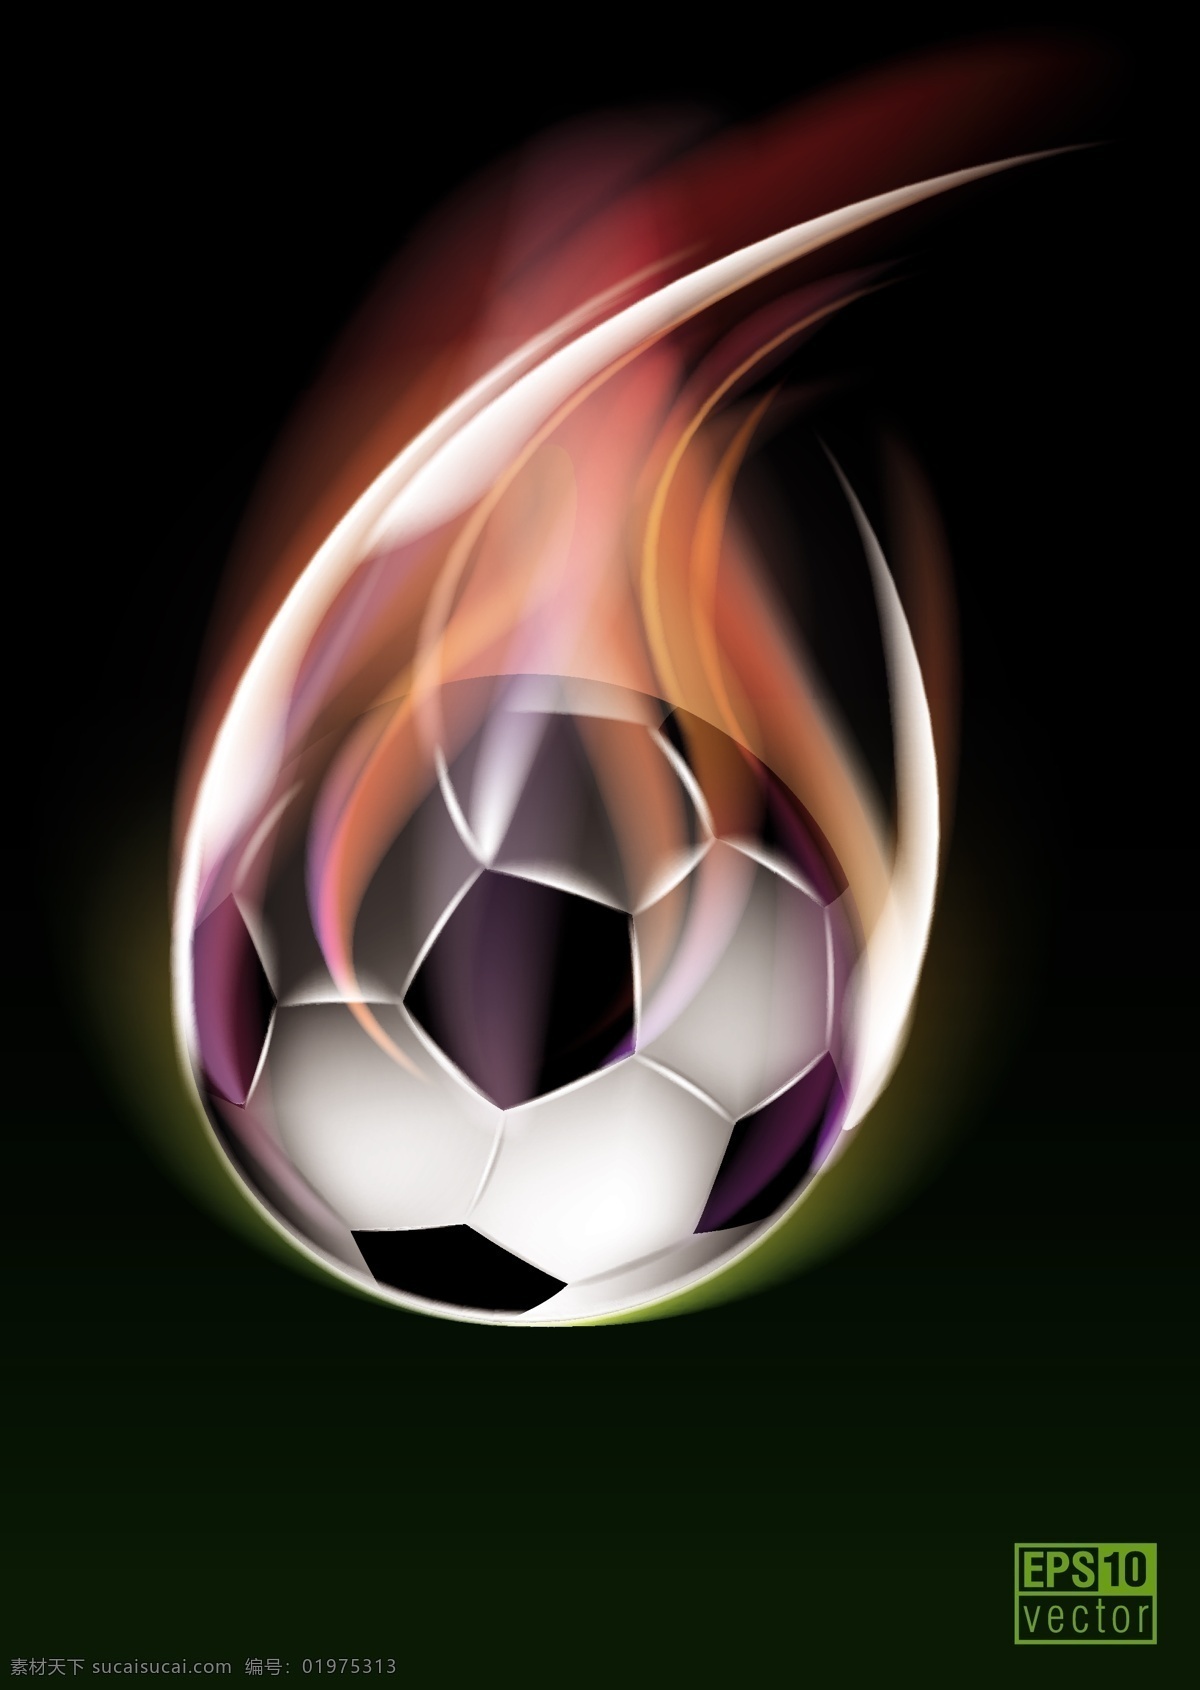 戴 着火 苗 足球 模板下载 火苗 世界杯 巴西 背景 体育运动 生活百科 矢量素材 黑色